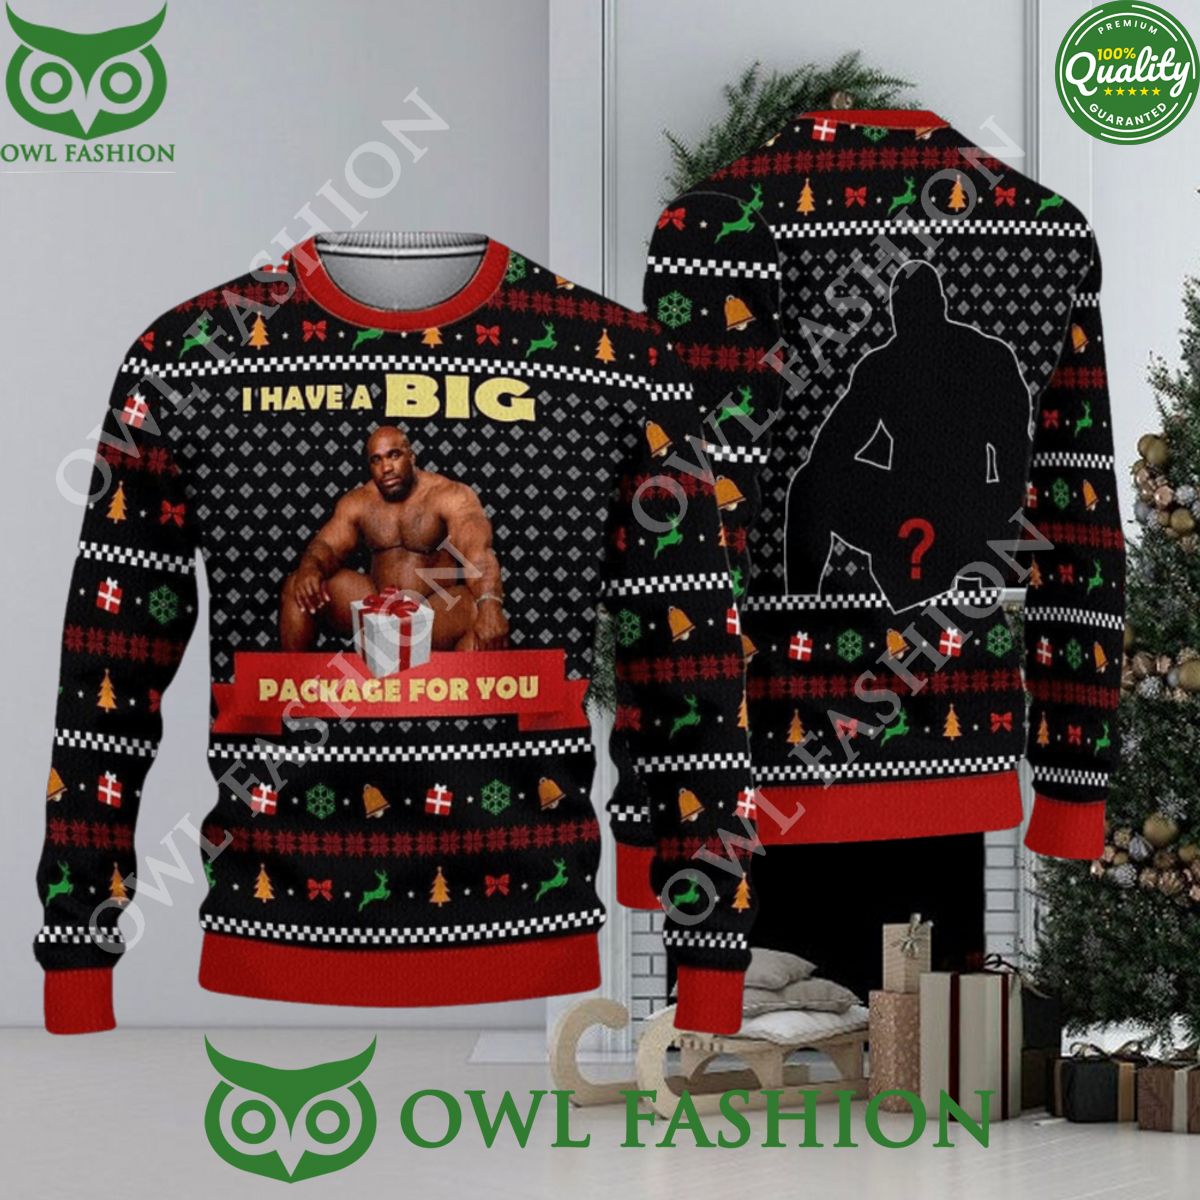 big package barry wood meme ugly christmas sweater jumper 1 9saRI.jpg